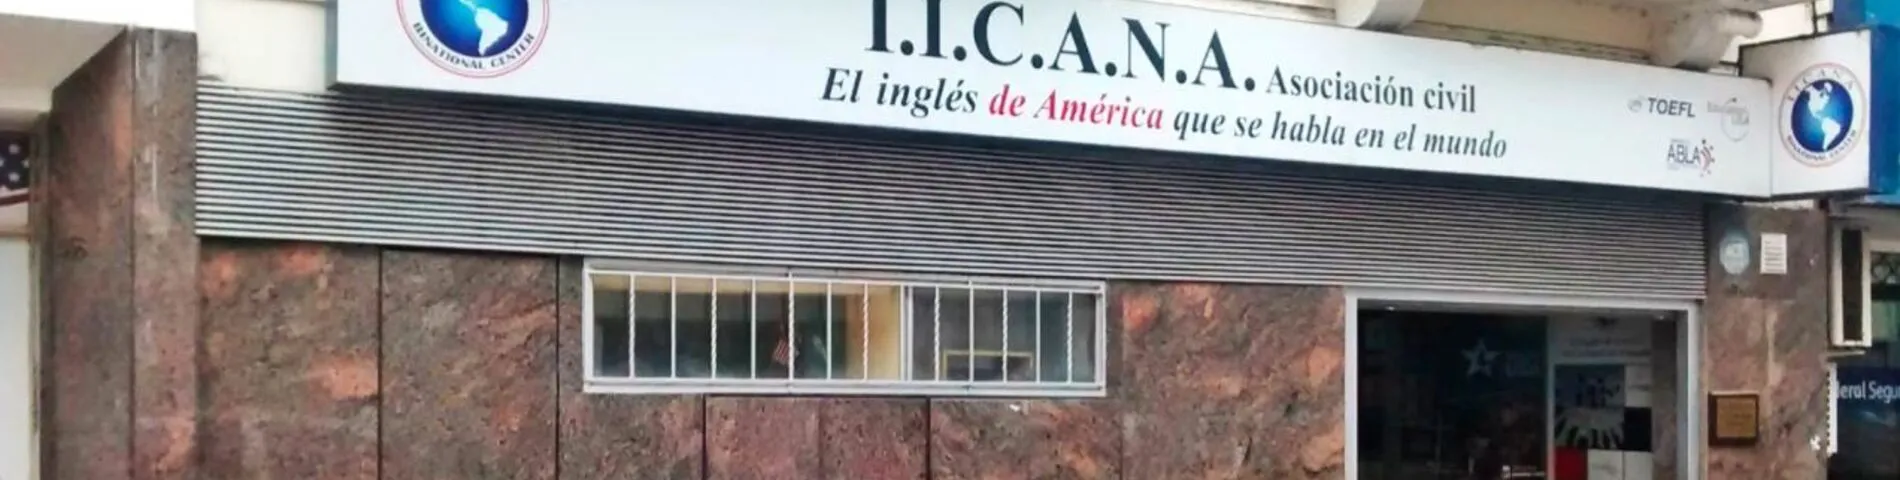 IICANA - Instituto de Intercambio Cultural Argentino Norteamericano photo 1